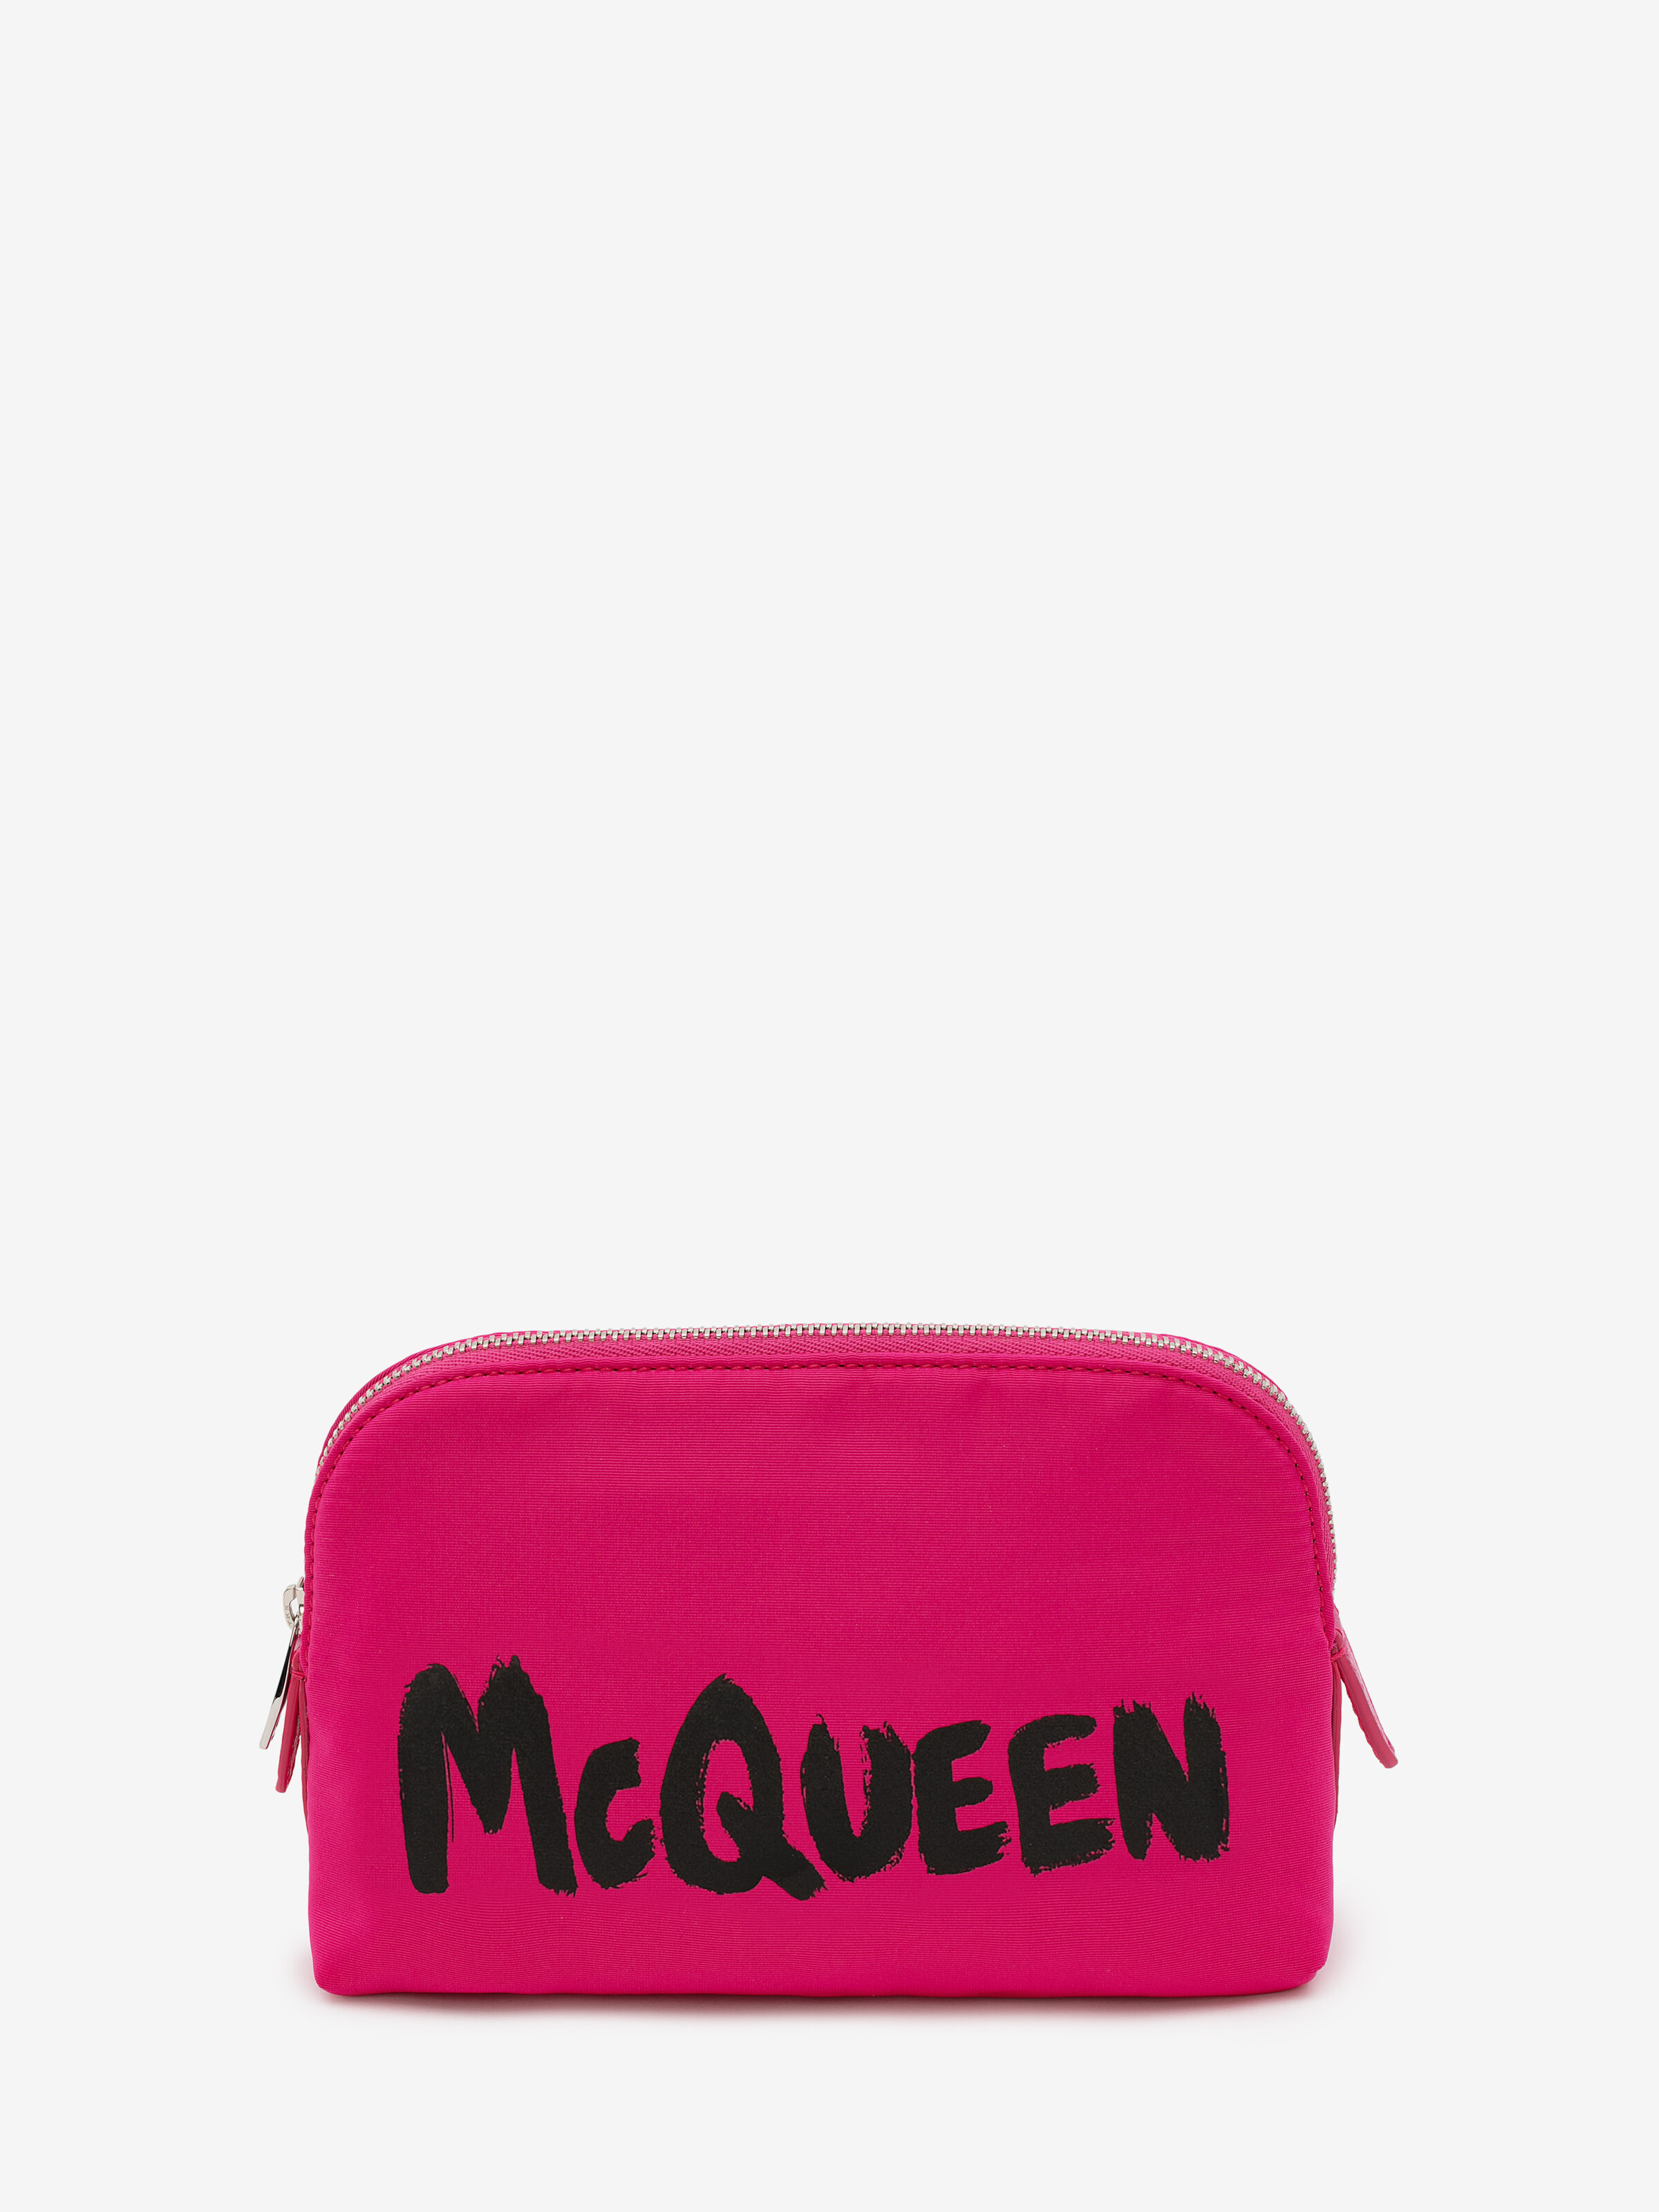 Alexander Mcqueen In Hot Pink | ModeSens